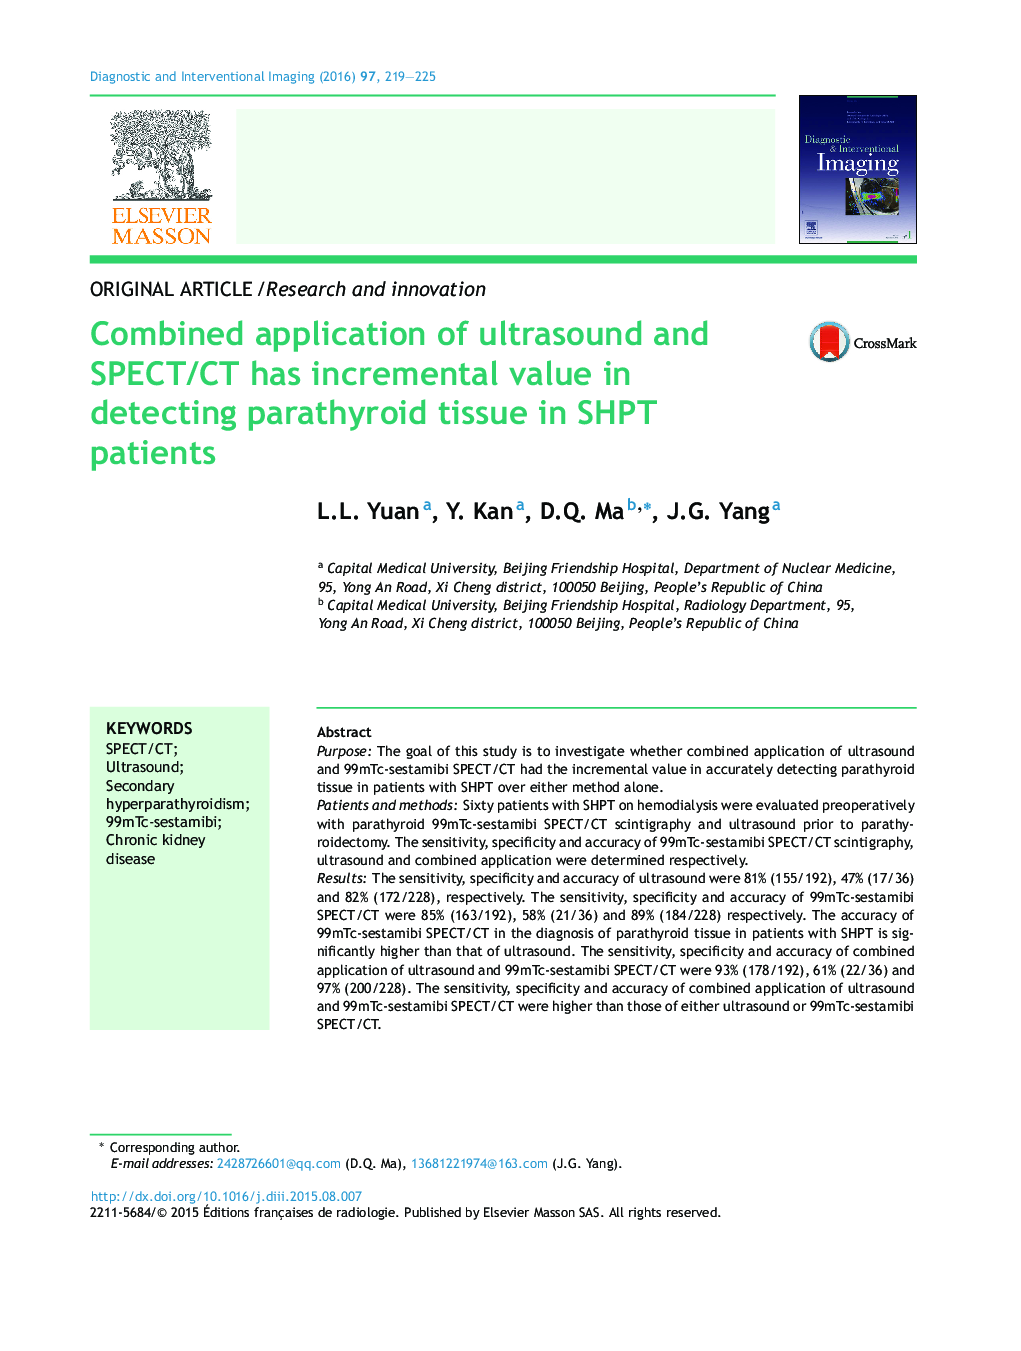 کاربرد توام اولتراسوند و SPECT/CT دارای ارزش افزایشی در تشخیص بافت پاراتیروئید در بیماران SHPT است 